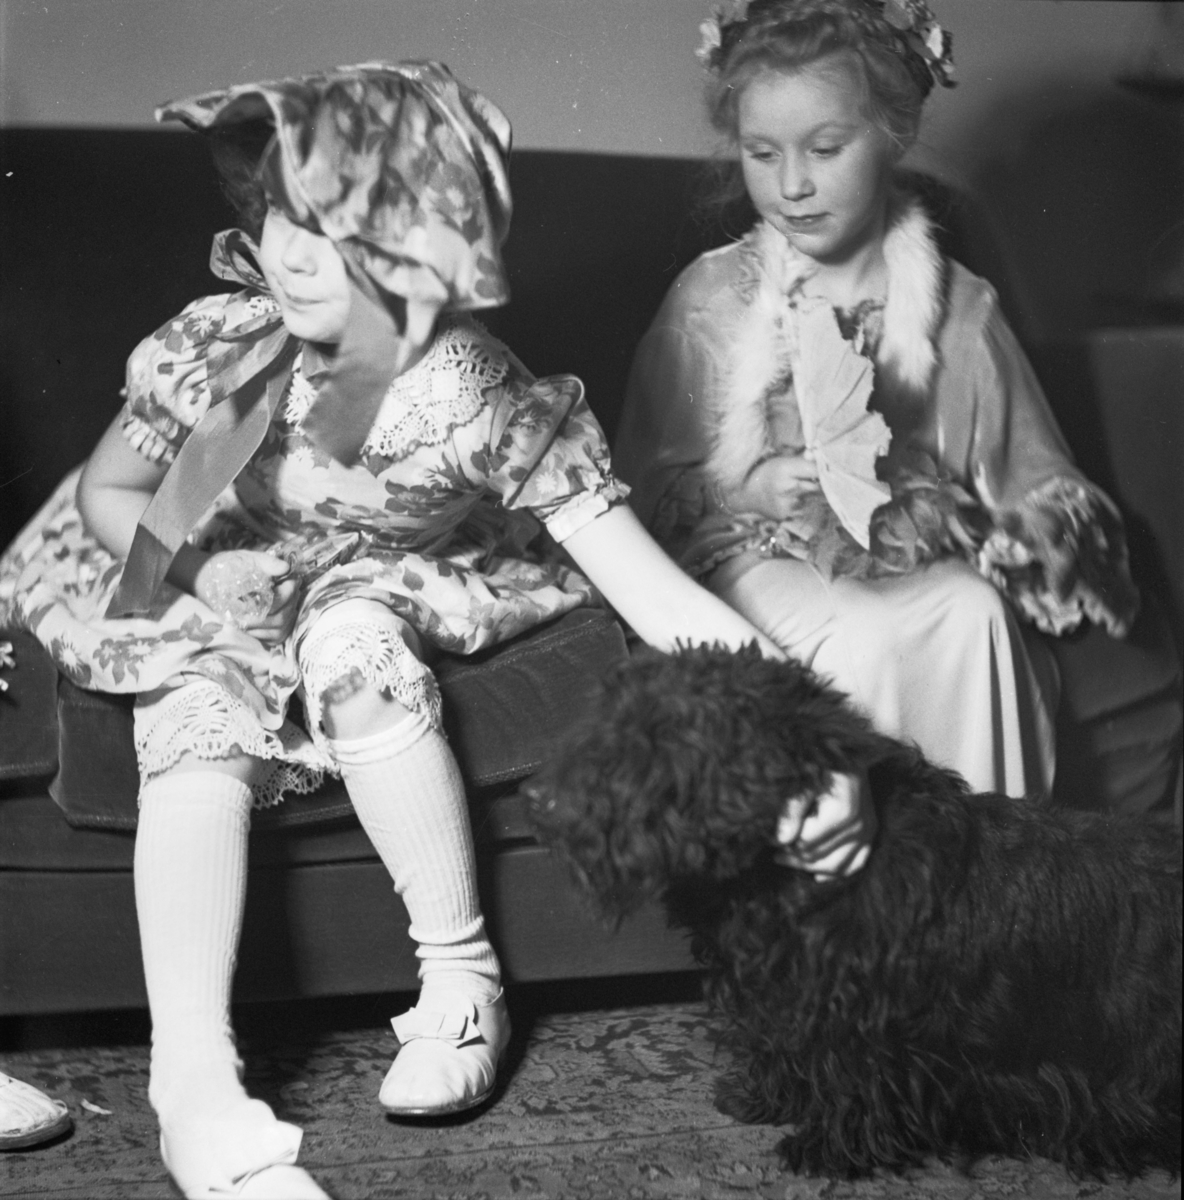 Barnkalas med maskerad
Två flickor och en hund